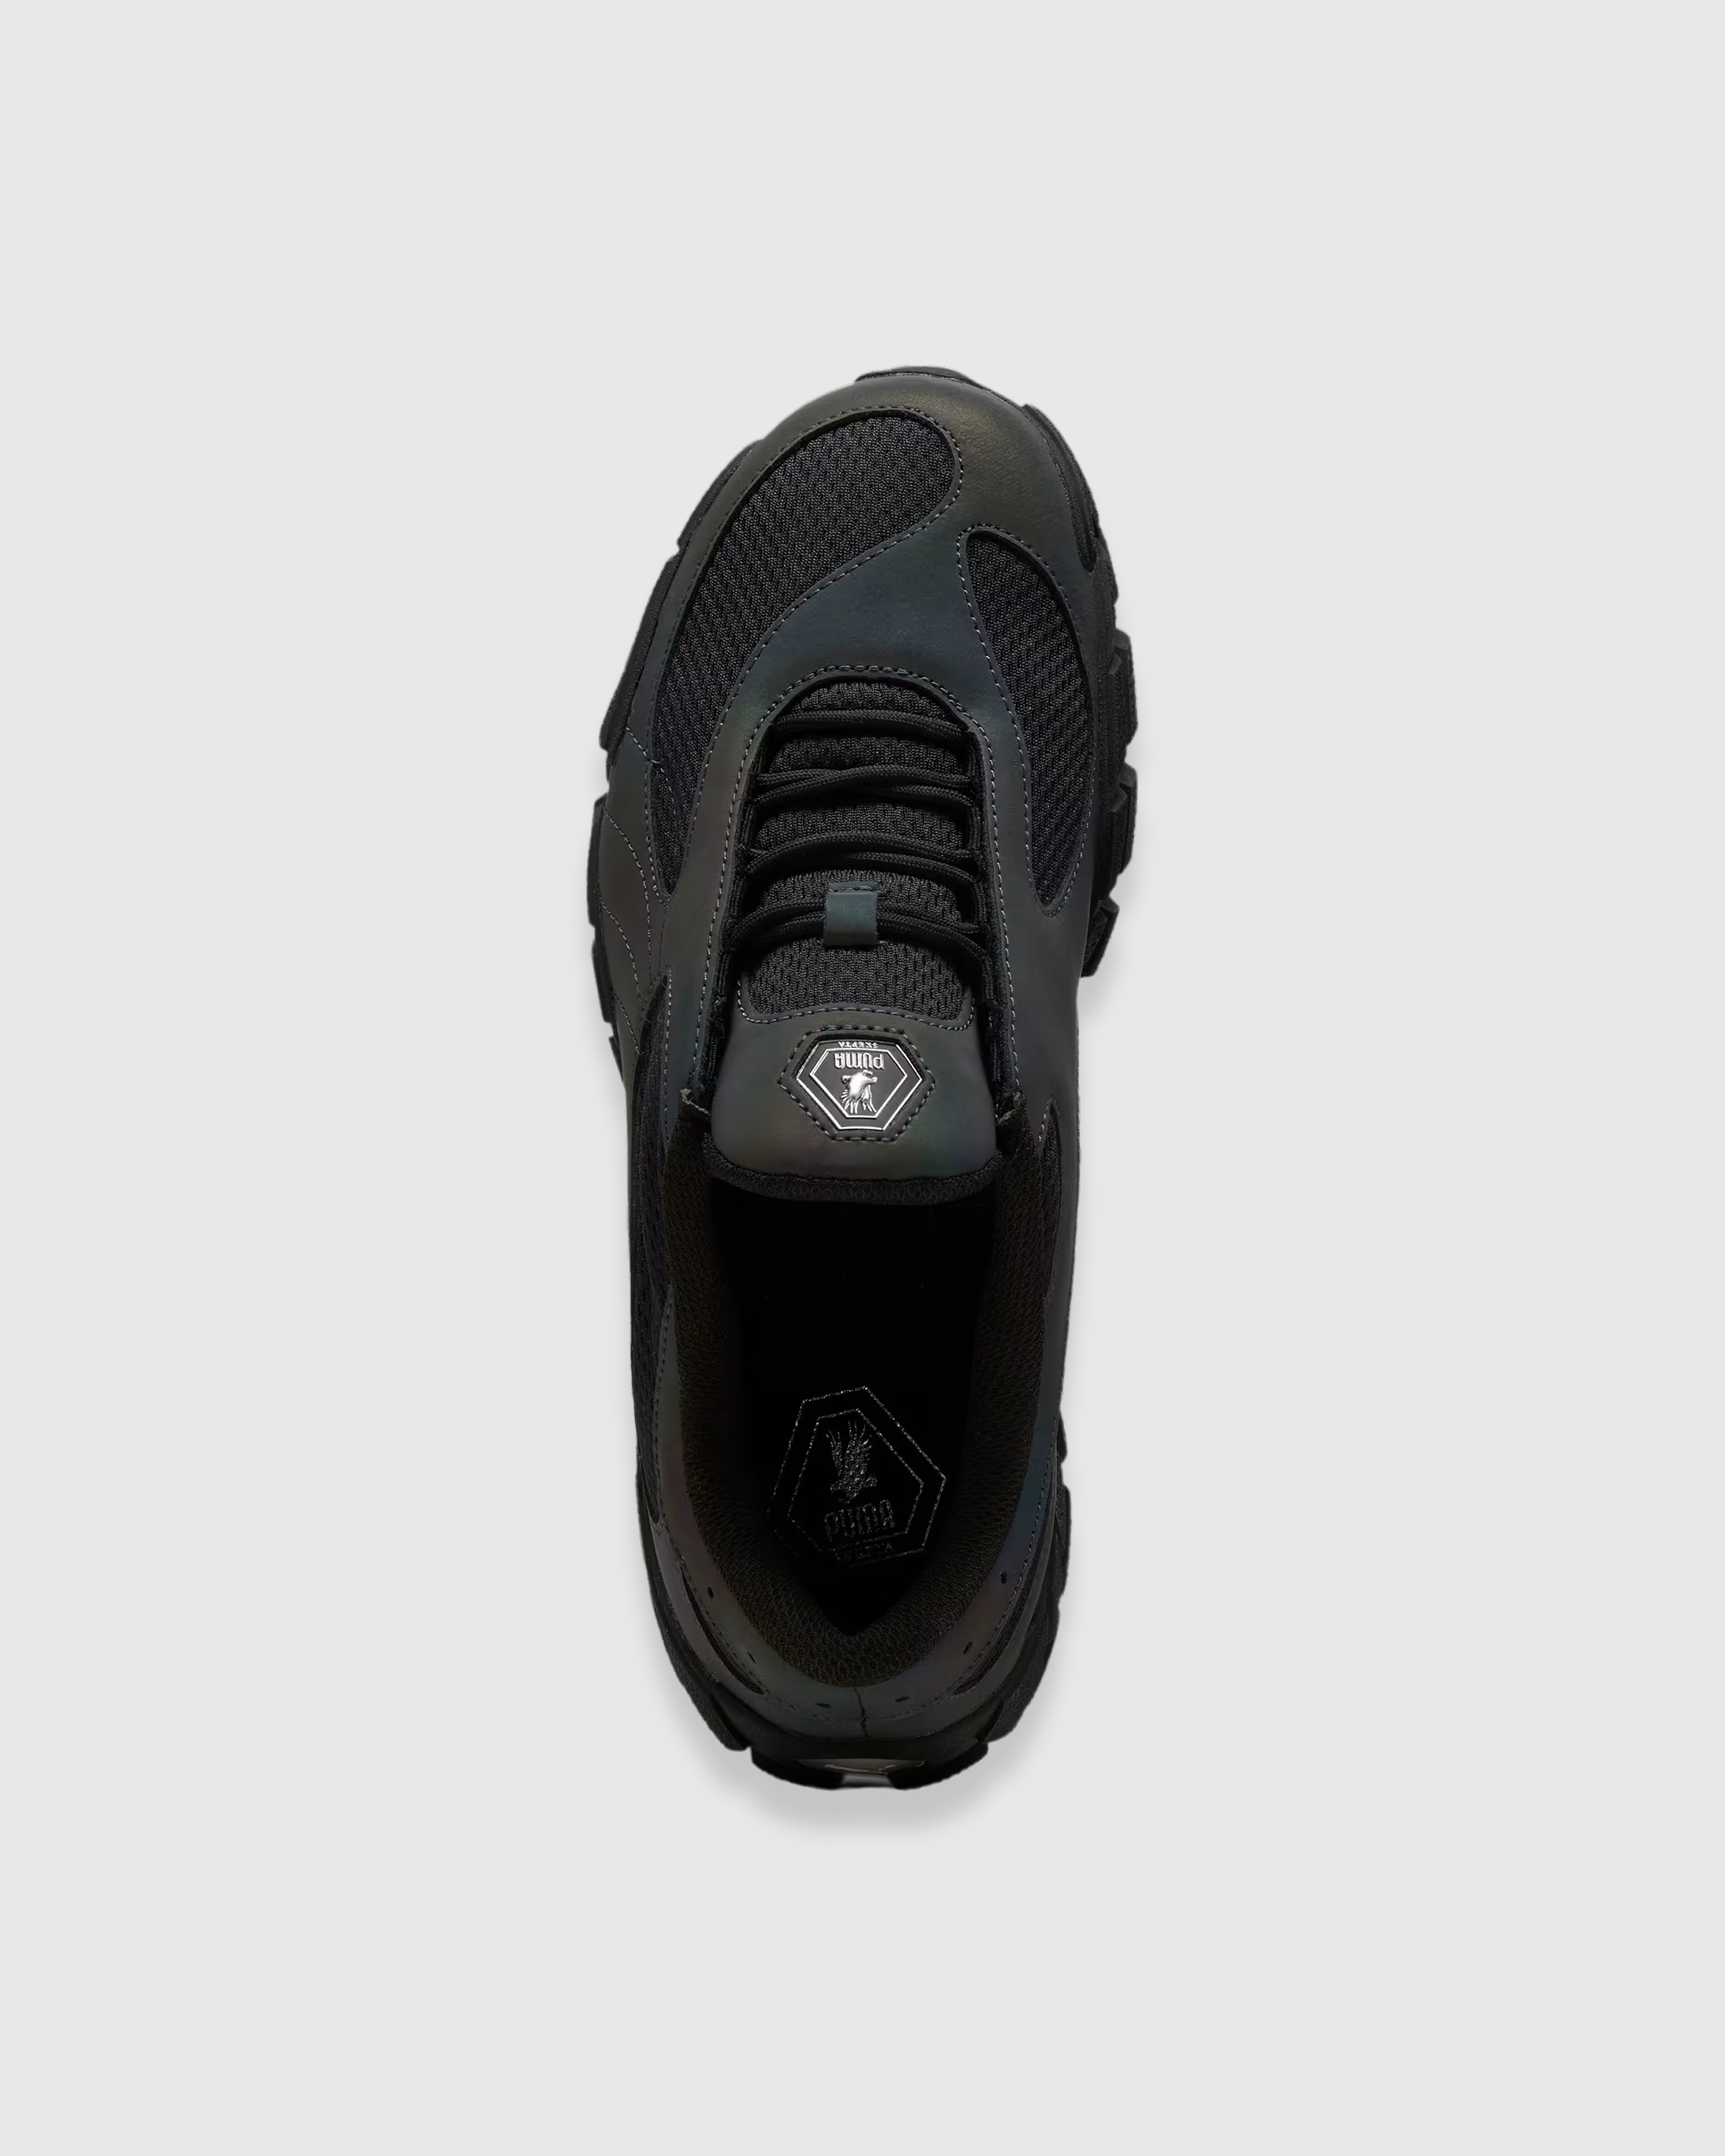 Puma x Skepta – Skope Forever Black - Low Top Sneakers - Black - Image 4